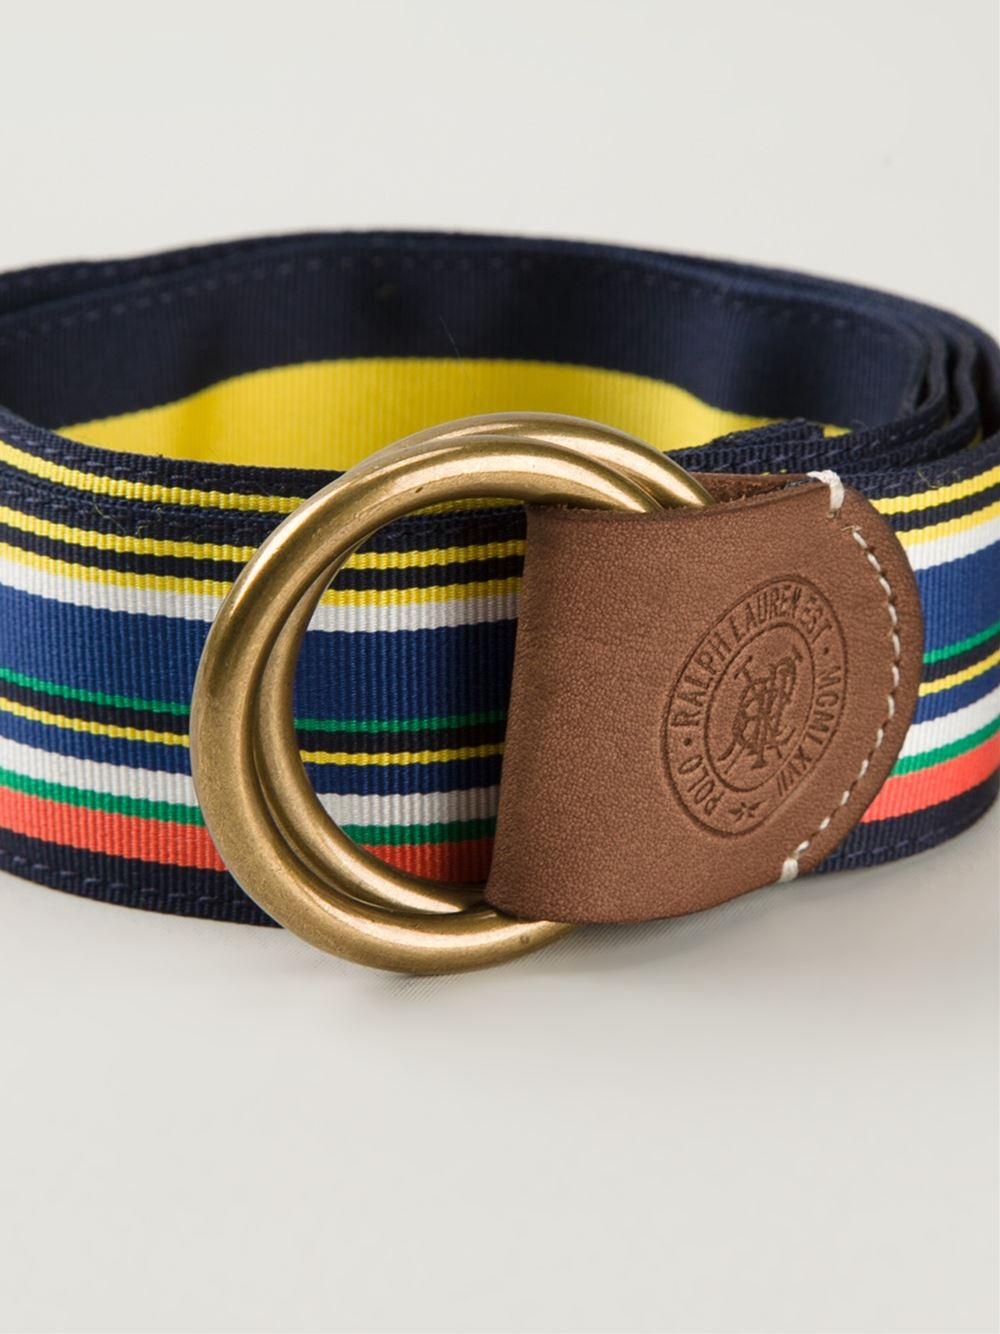 Polo Ralph Lauren Striped Belt in Blue for Men - Lyst